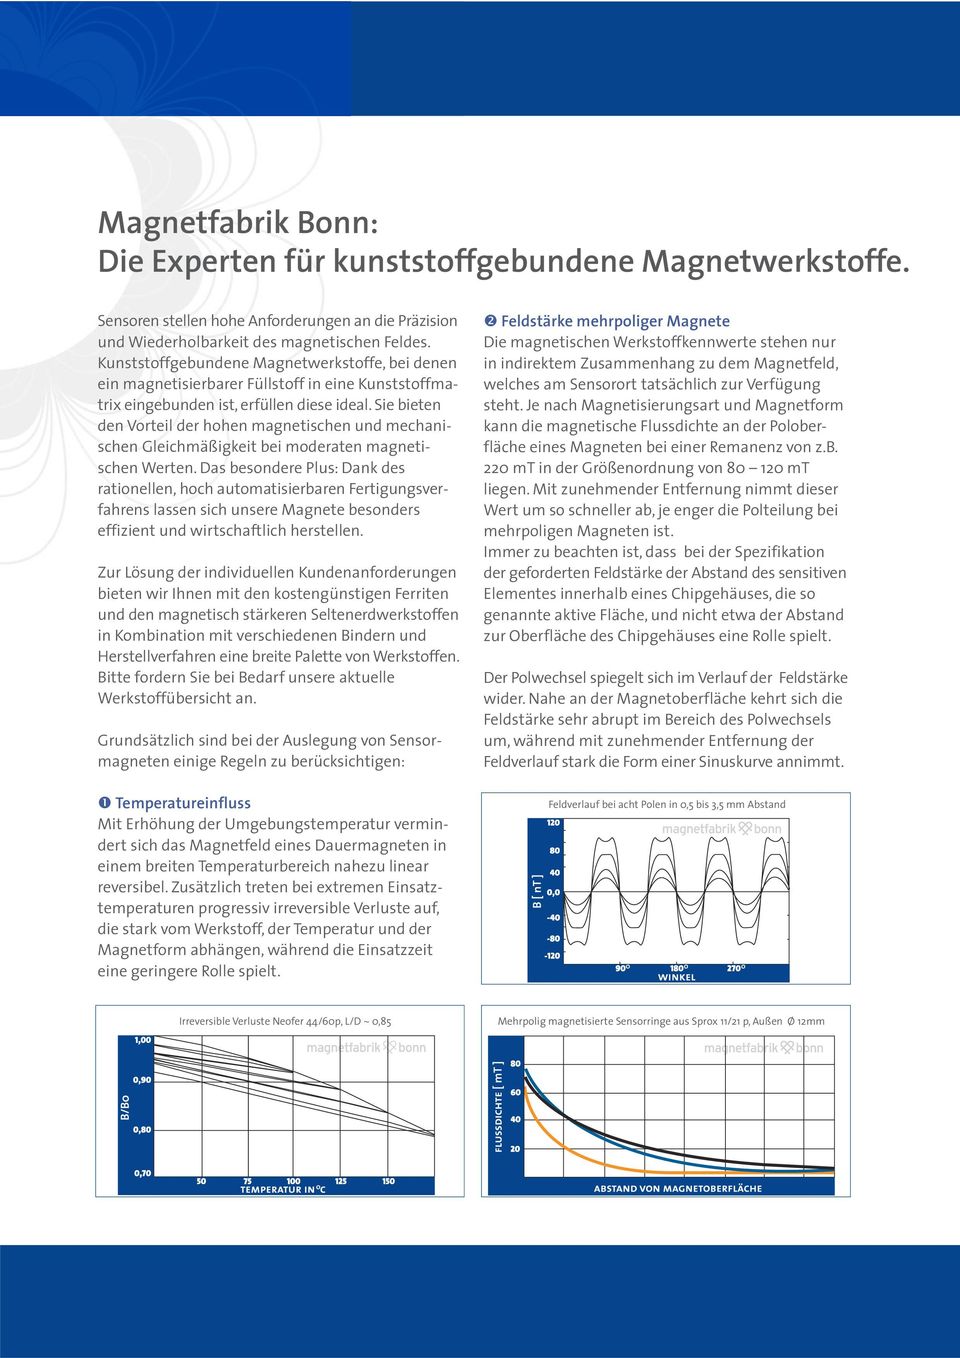 Sie bieten den Vorteil der hohen magnetischen und mechanischen Gleichmäßigkeit bei moderaten magnetischen Werten.